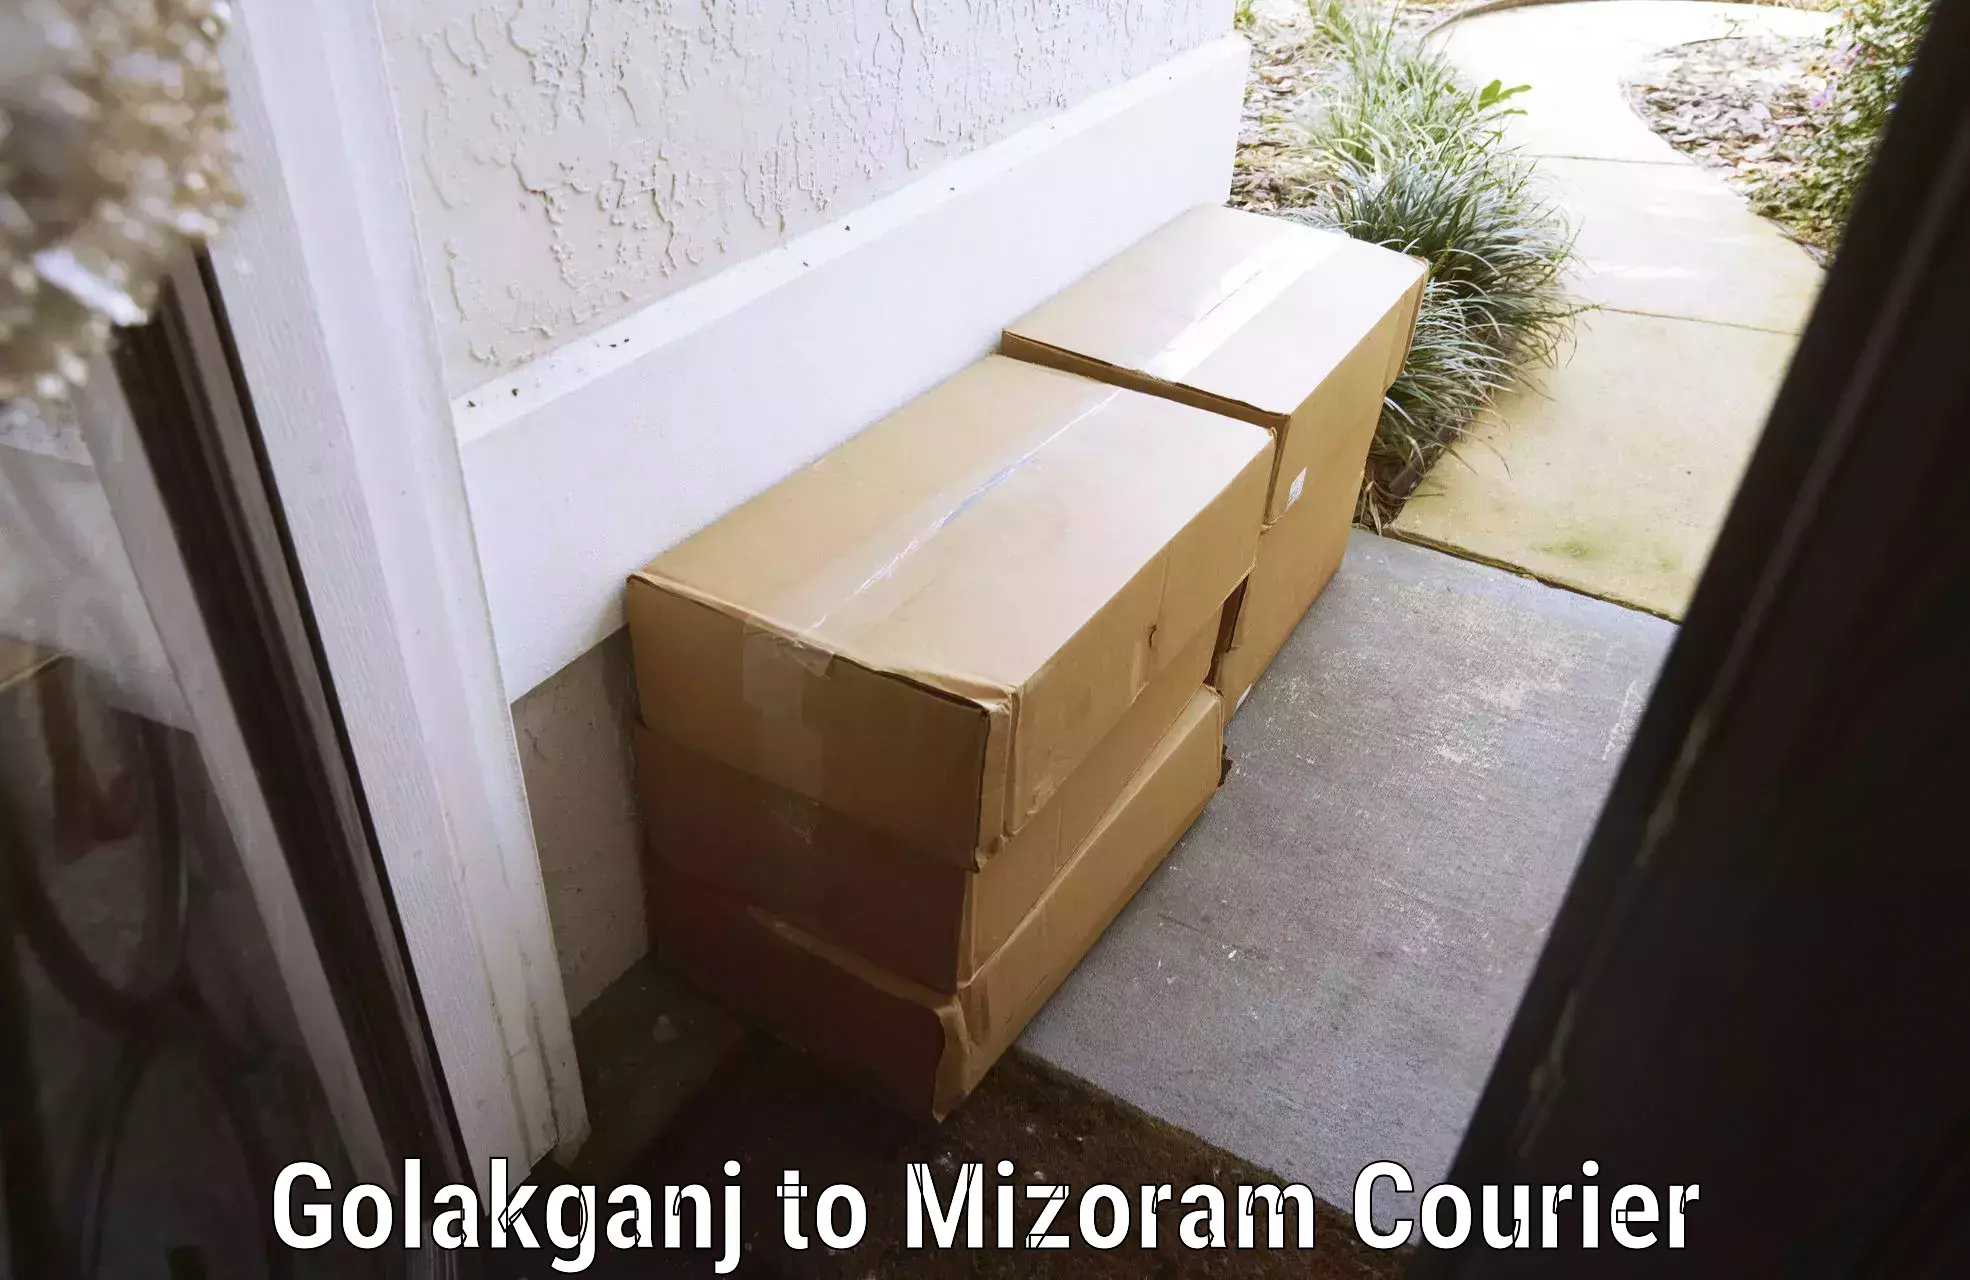 Baggage transport professionals Golakganj to Mizoram